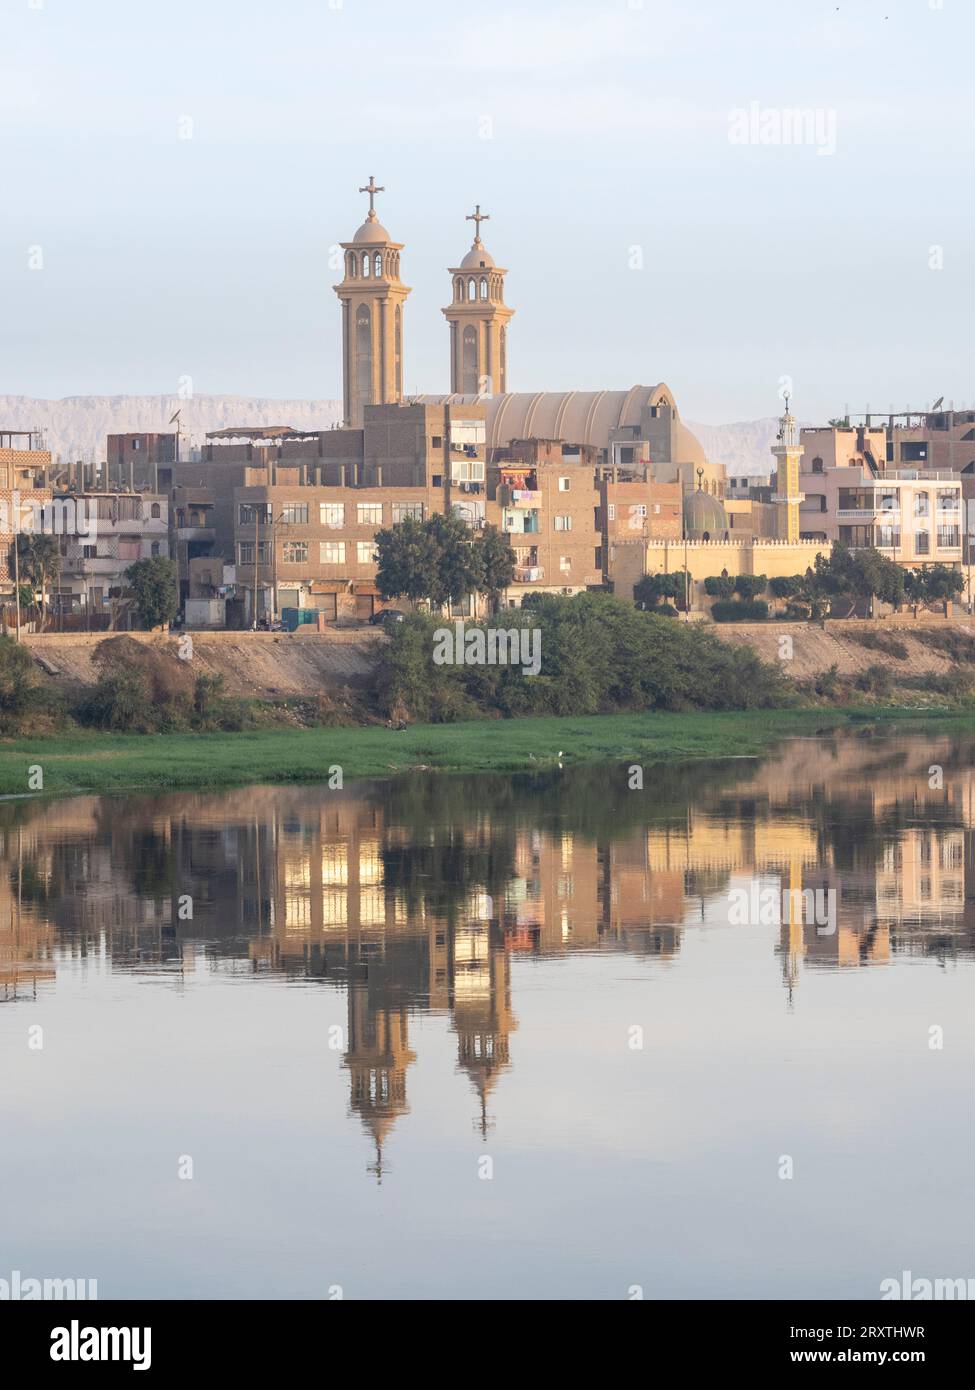 Une vue du rivage le long du Nil supérieur, avec réflexion de la ville et de l'église, Dendera, Egypte, Afrique du Nord, Afrique Banque D'Images